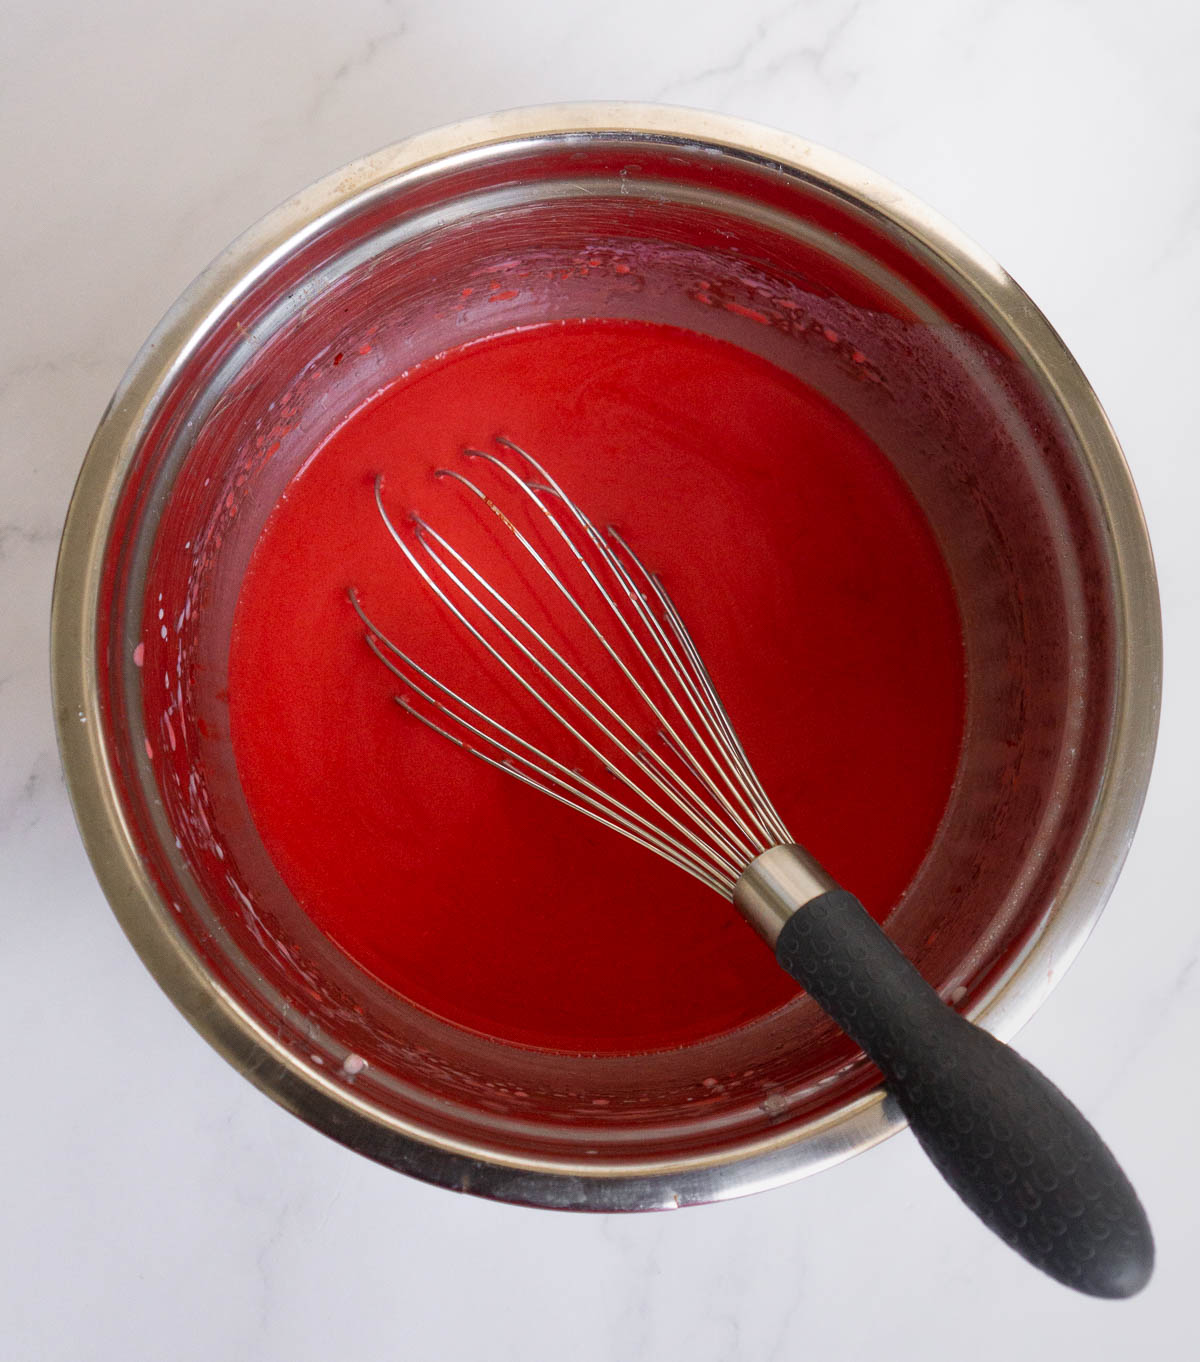 Wet ingredients for red velvet pancakes (wet liquid)